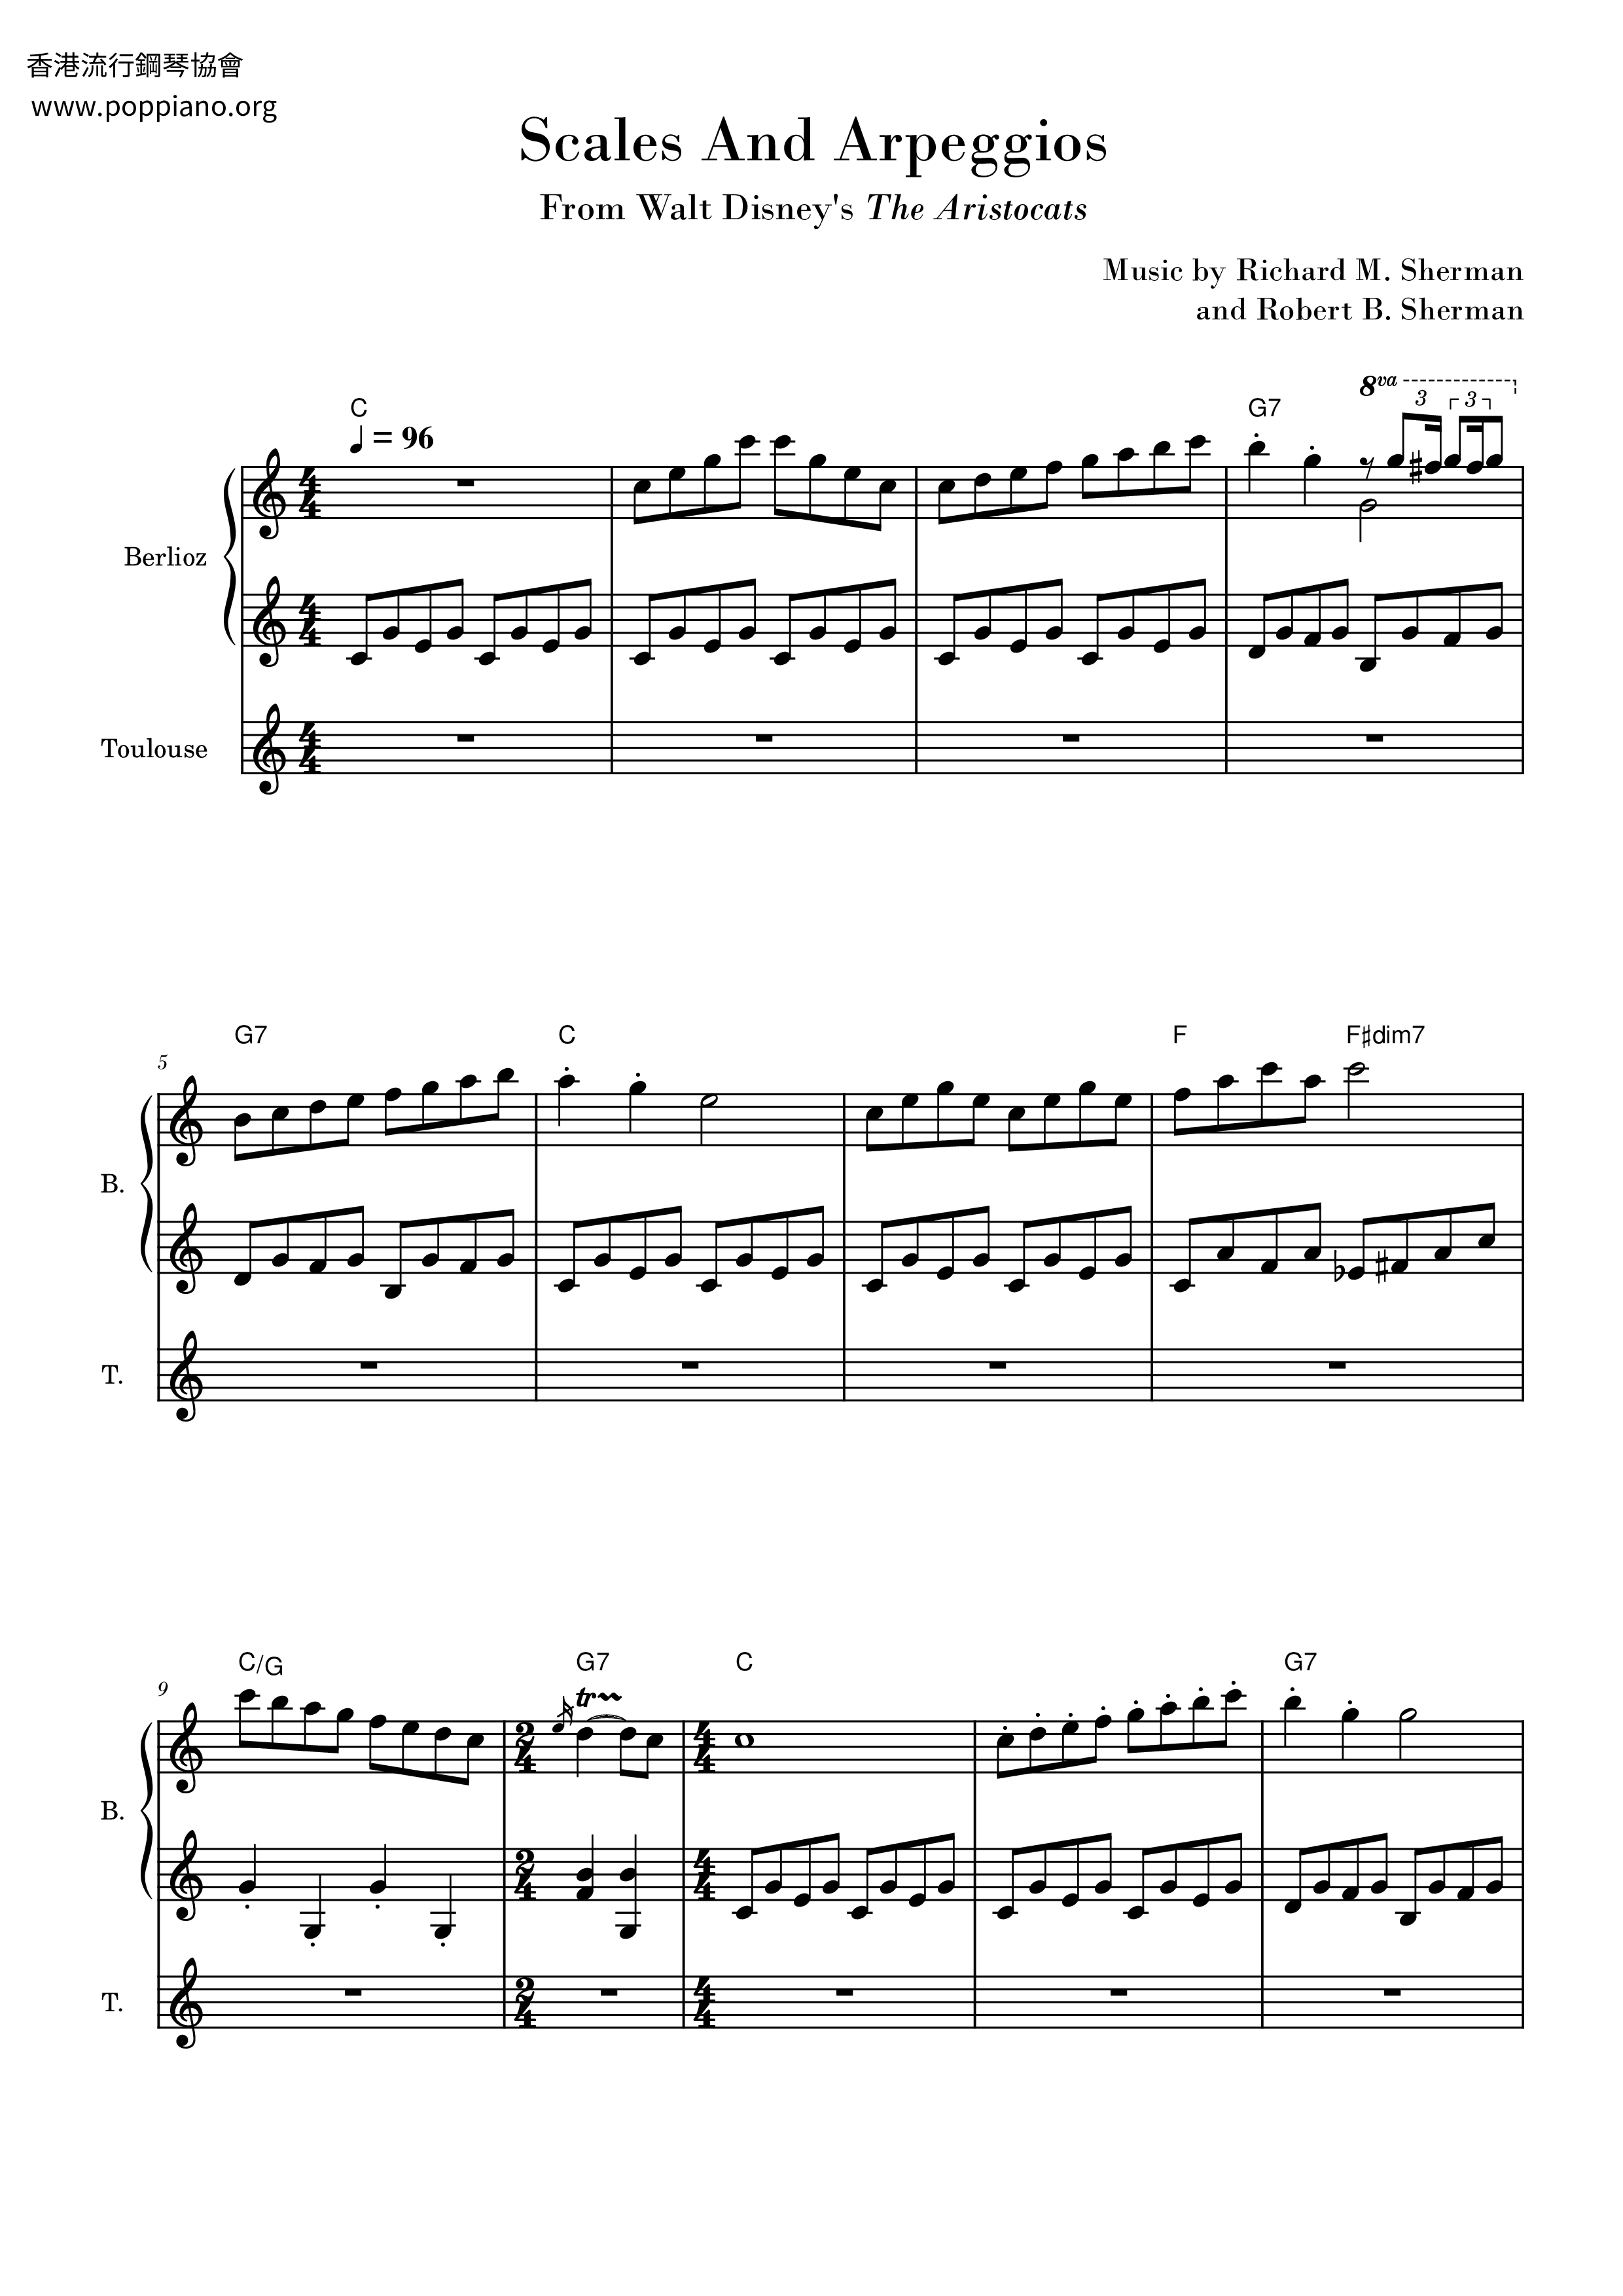 The Aristocats - Scales And Arpeggios Score